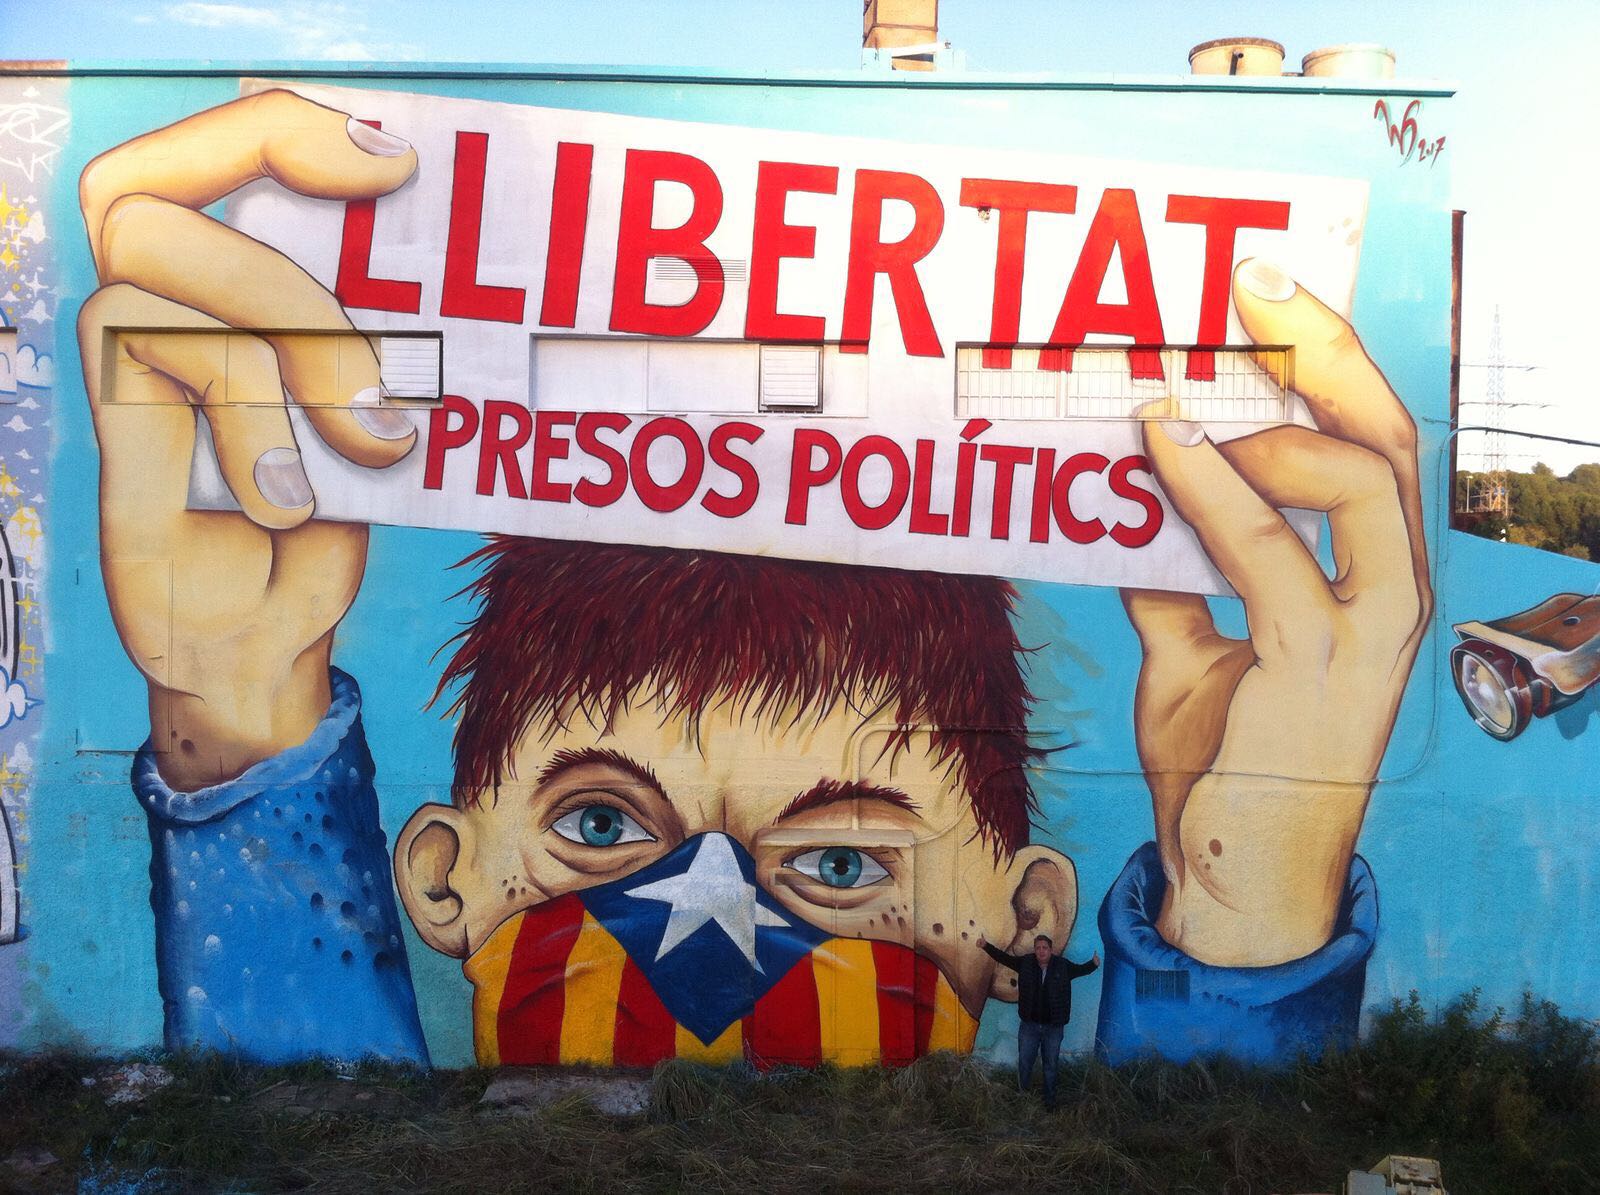 Demanem la llibertat dels presos polítics amb un mural gegantí a Terrassa